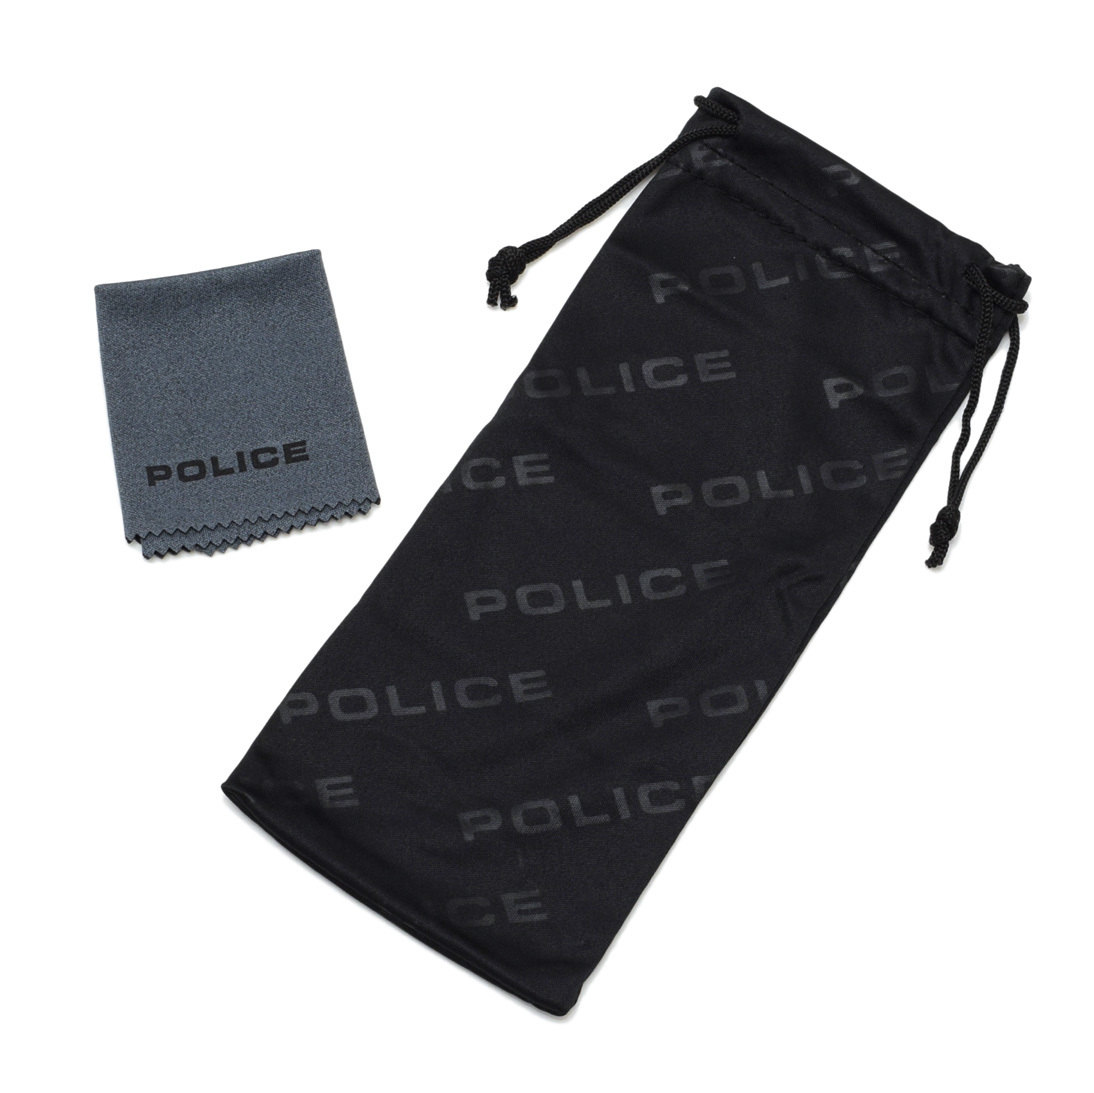  Police солнцезащитные очки SPLC45J-02GR серый мужской UV cut POLICE Japan модель внутренний стандартный товар 